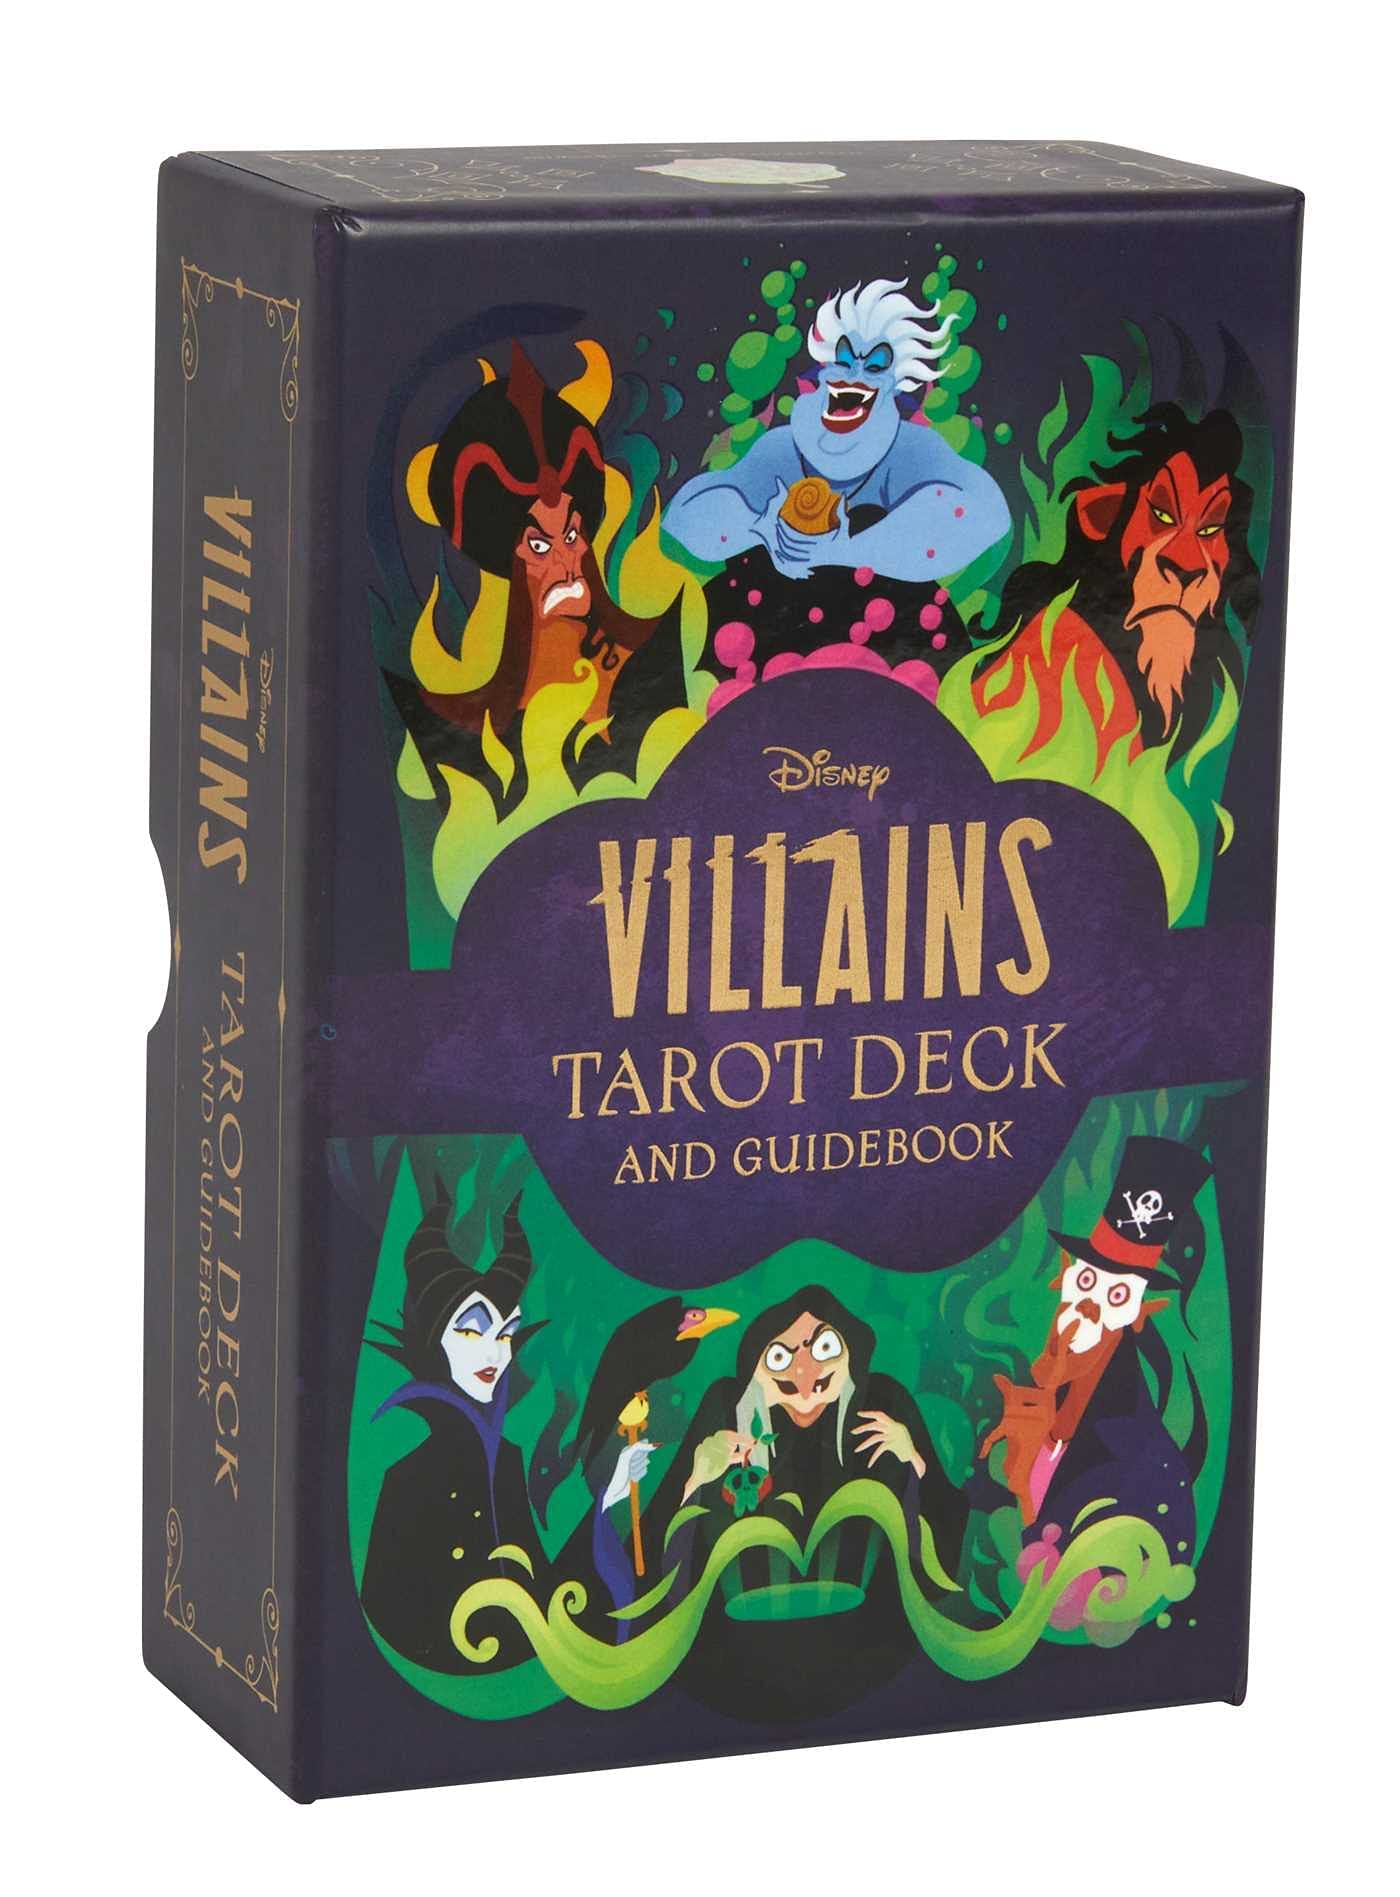 Disney Villains Tarot Deck and Guidebook (Hardcover)